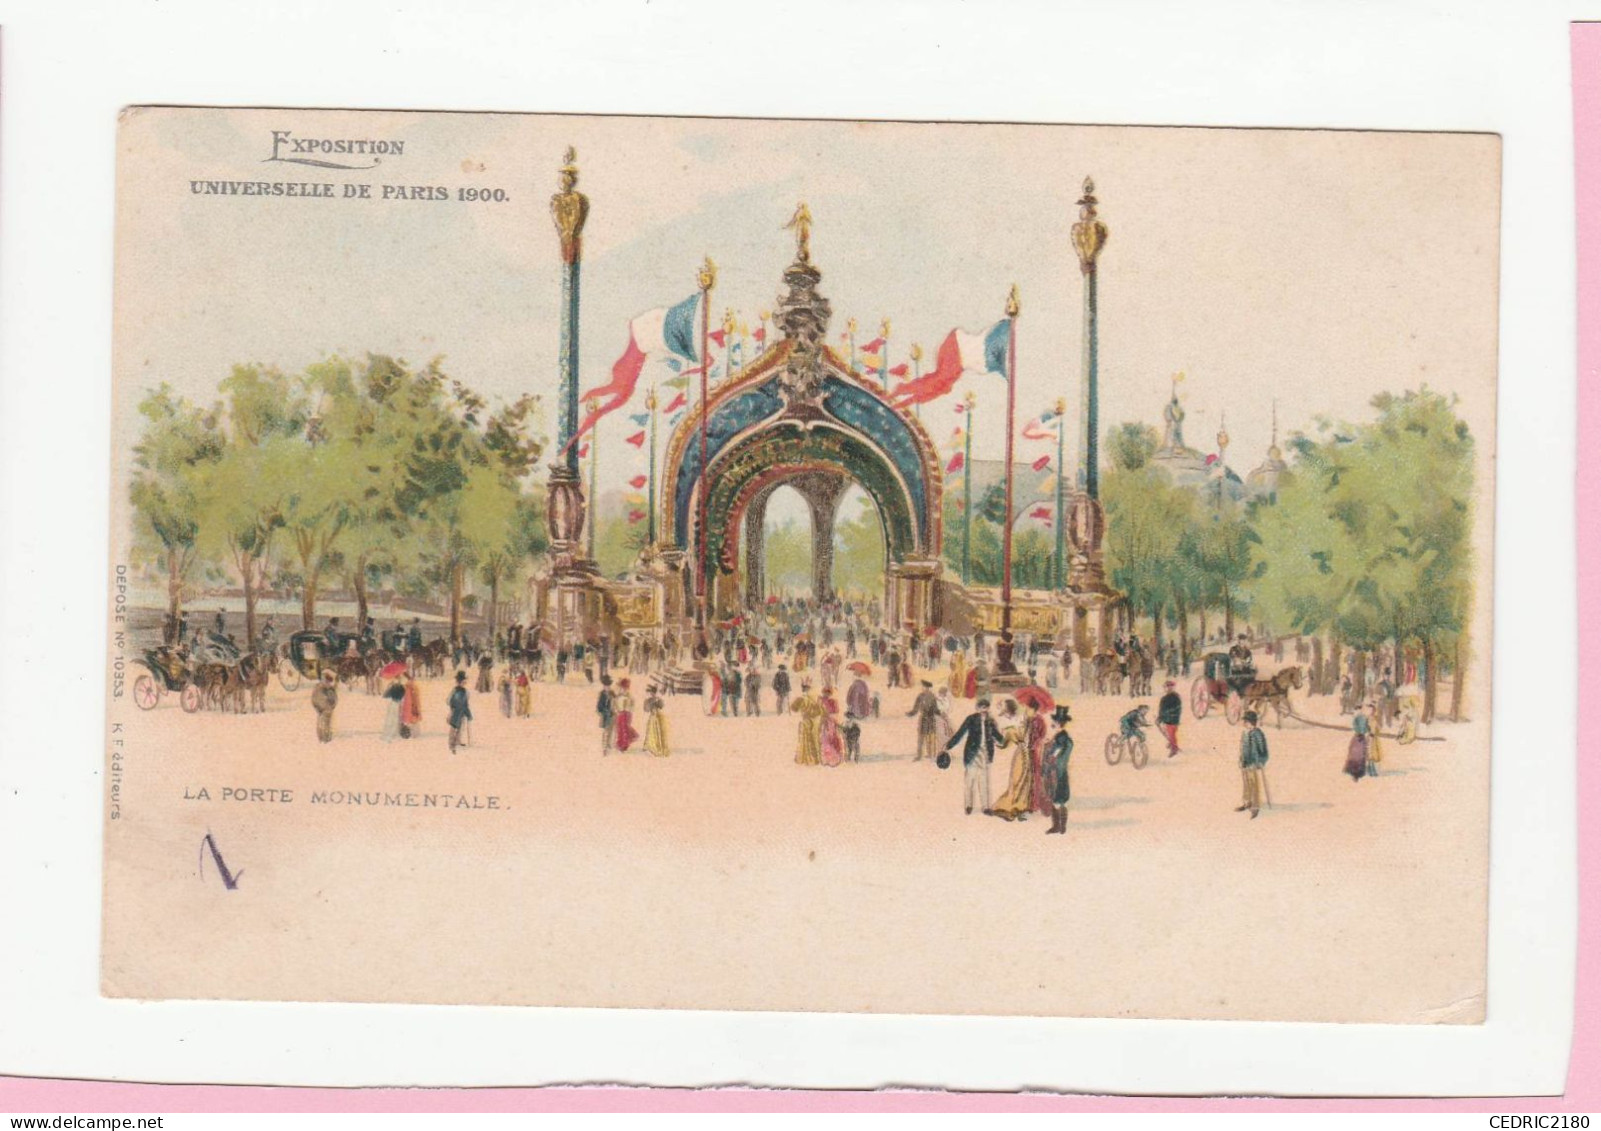 EXPOSITION UNIVERSELLE DE PARIS 1900 LA PORTE MONUMENTALE - Tentoonstellingen